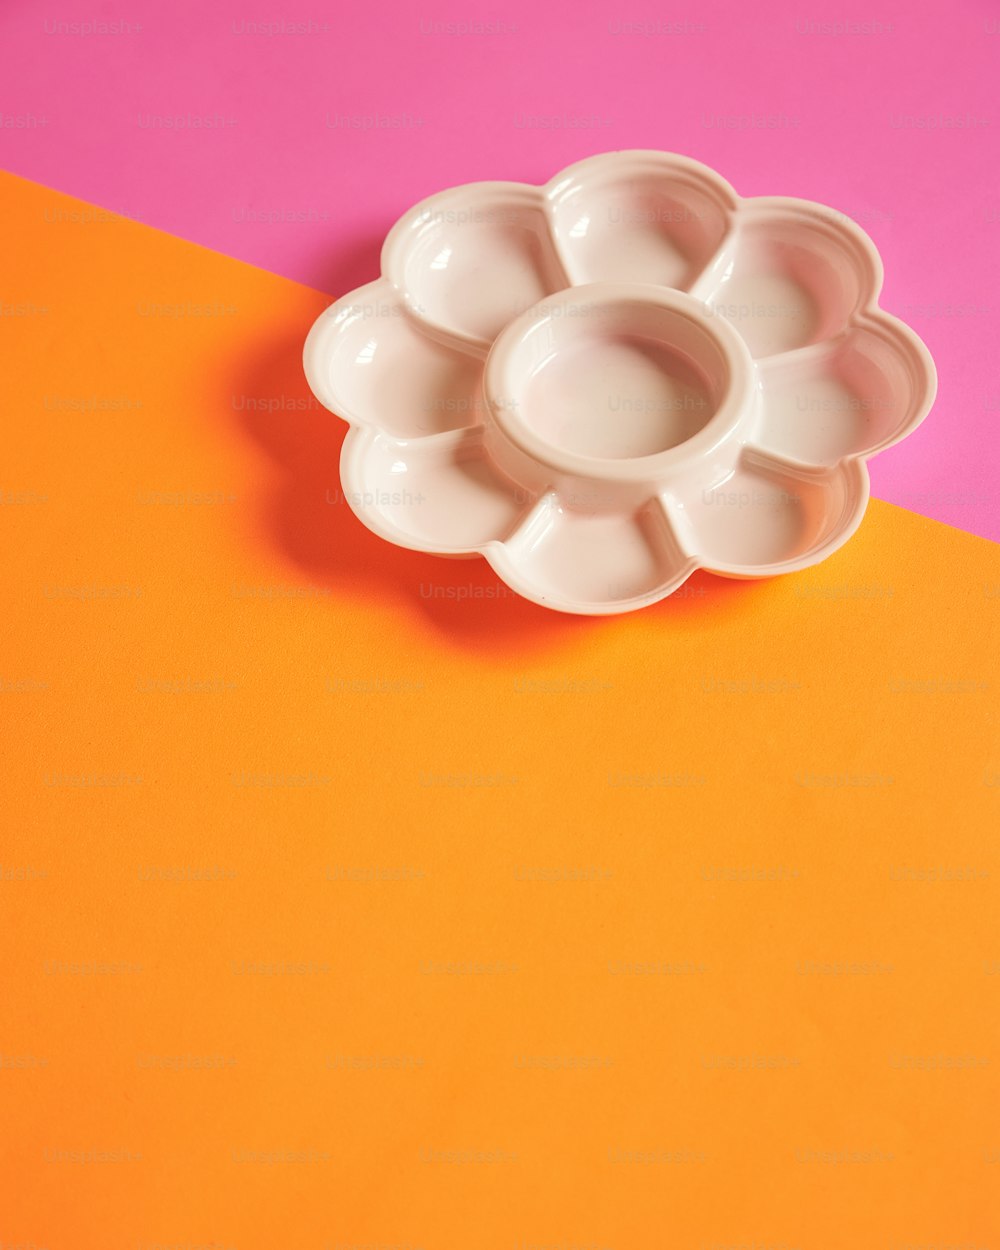 주황색과 분홍색 테이블 위에 놓인 흰색 꽃 모양의 그릇